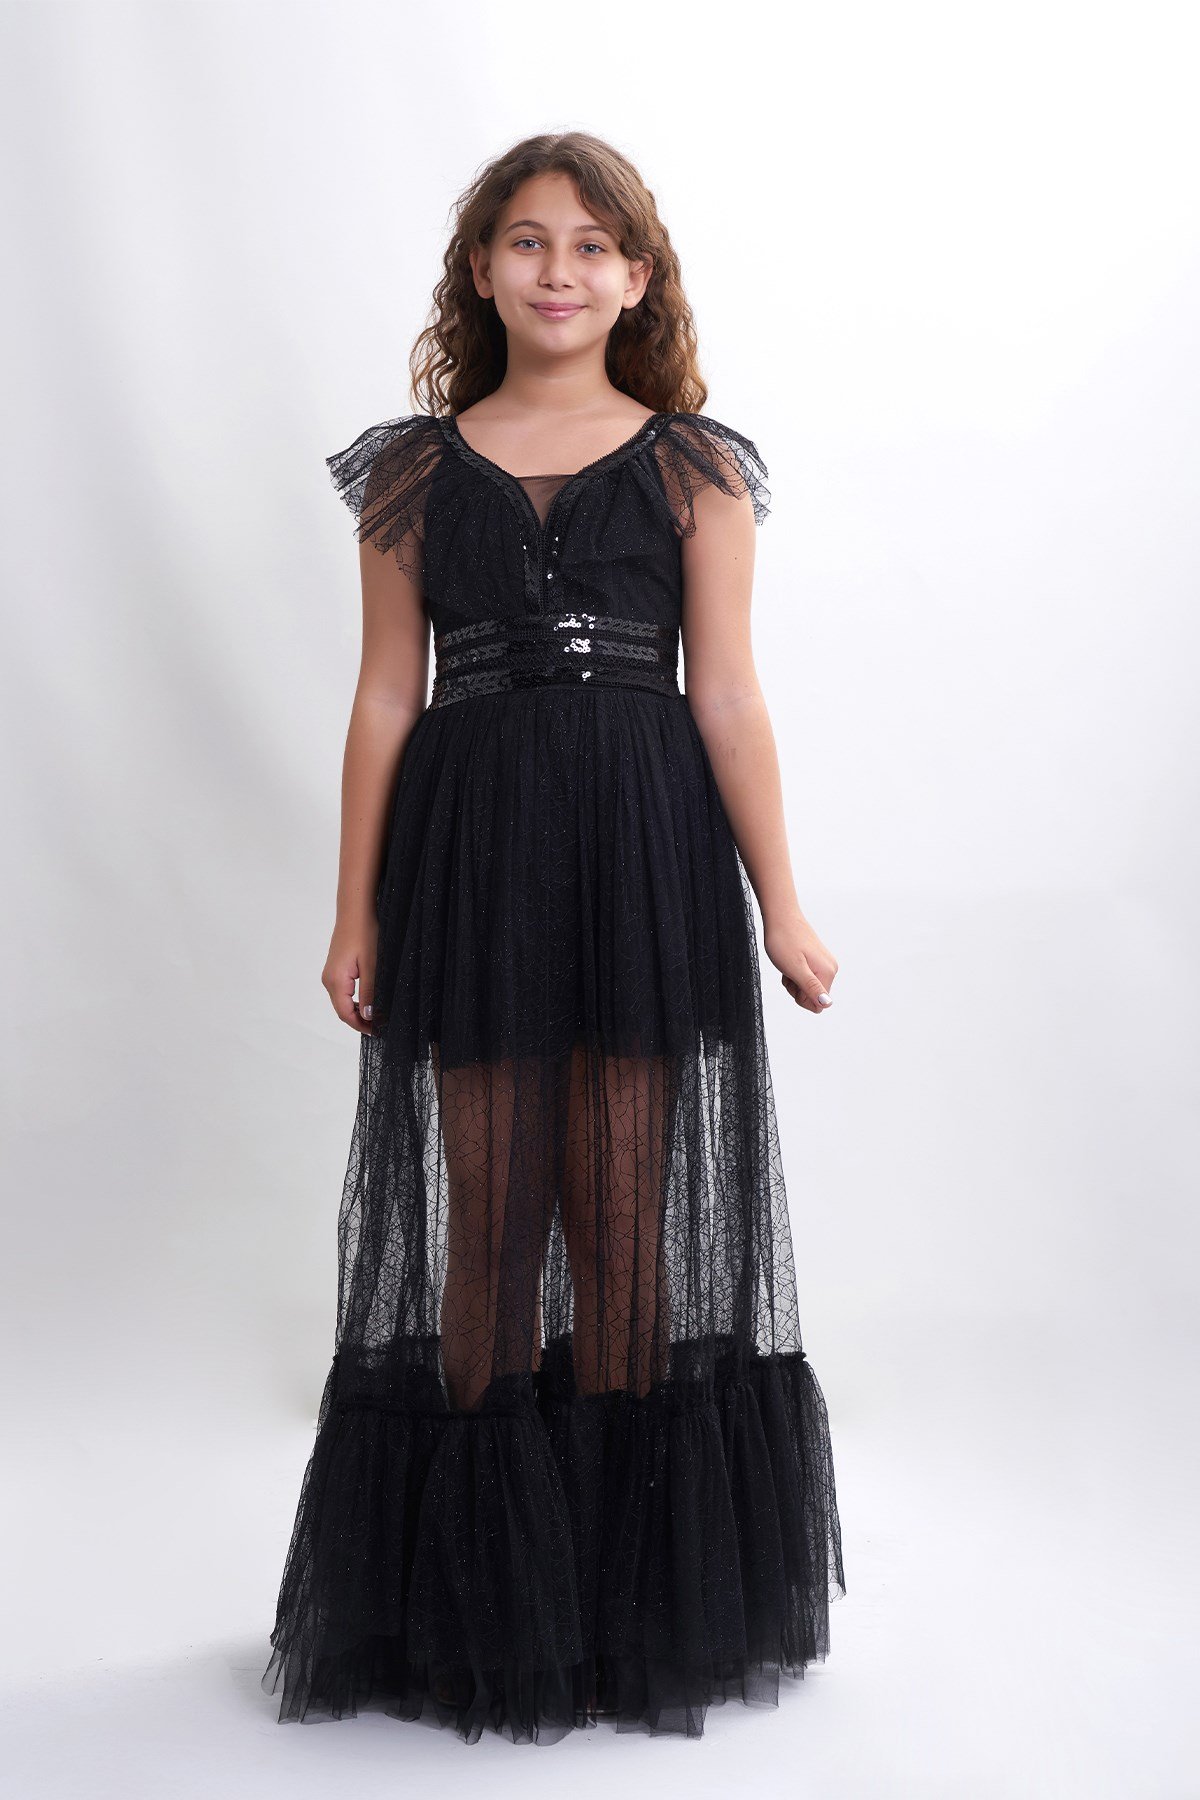 Kız Çocuk/Genç Pul ve Tül Detaylı Abiye Elbise 5311 Renk Siyah 10-14 Yaş